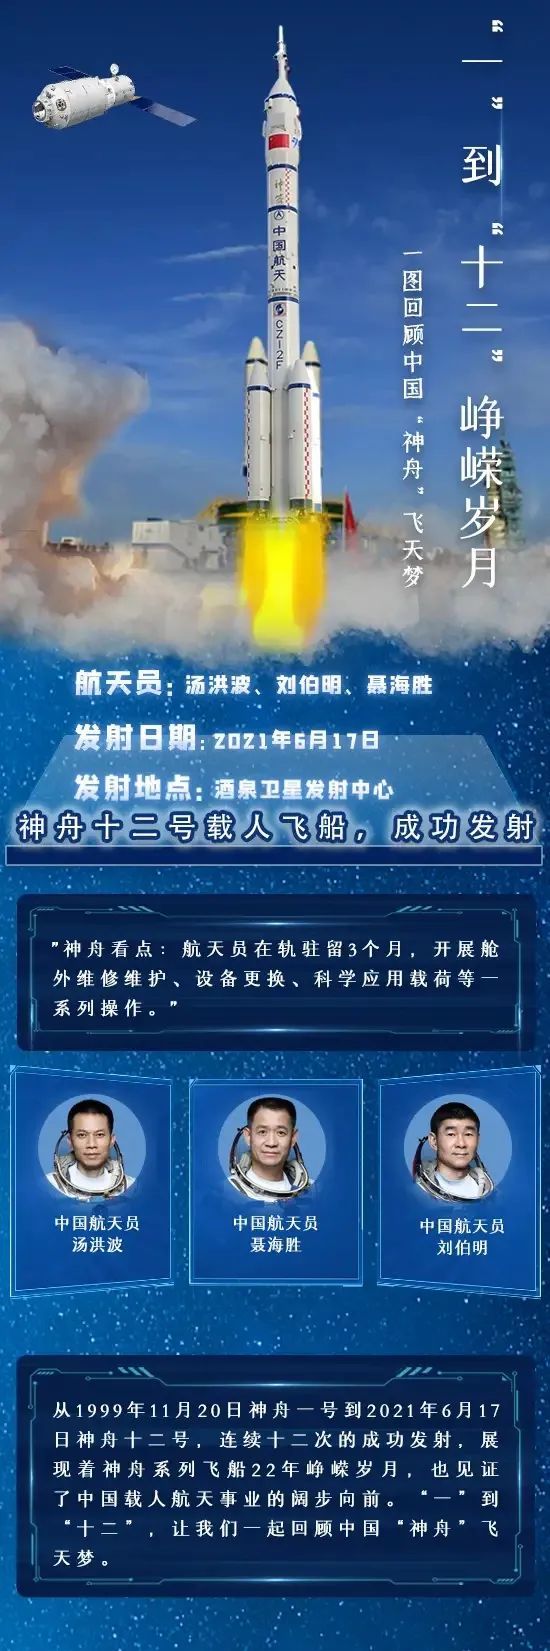 据中国载人航天工程办公室消息,在神舟十二号载人飞船与天和核心舱